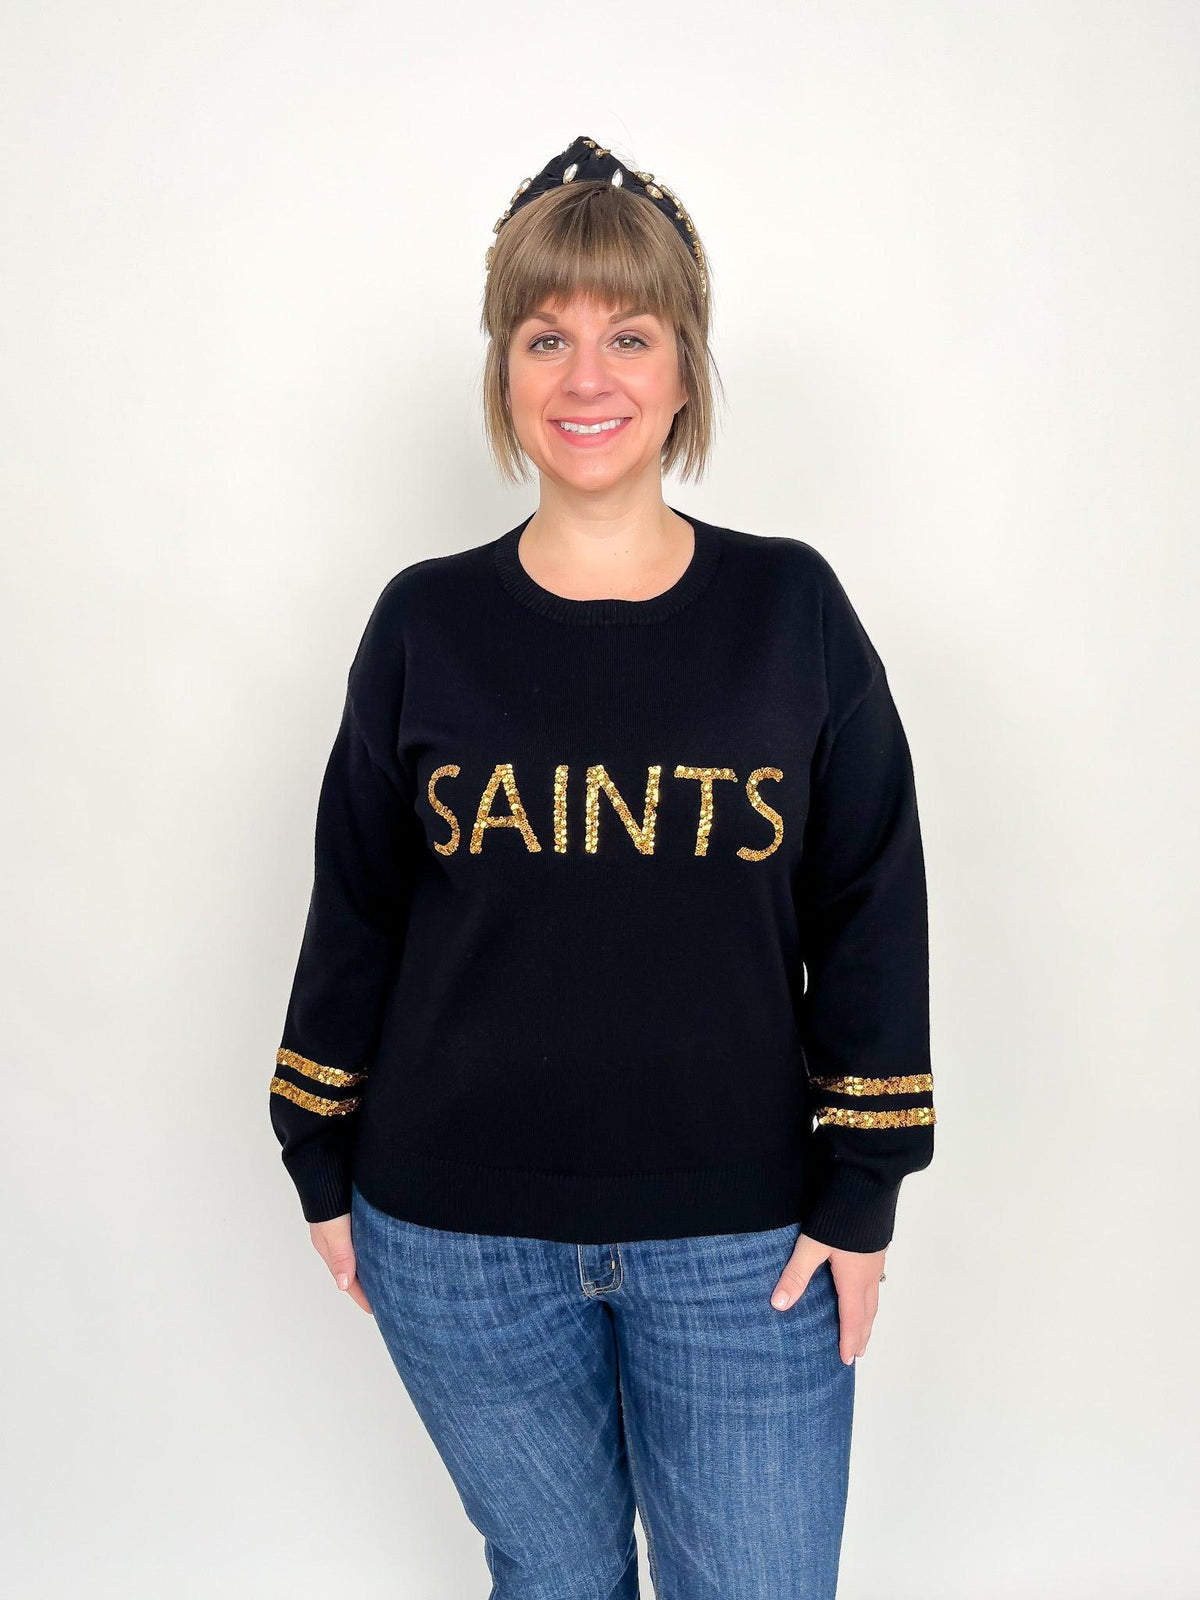 new orleans saints sweatshirt vintage